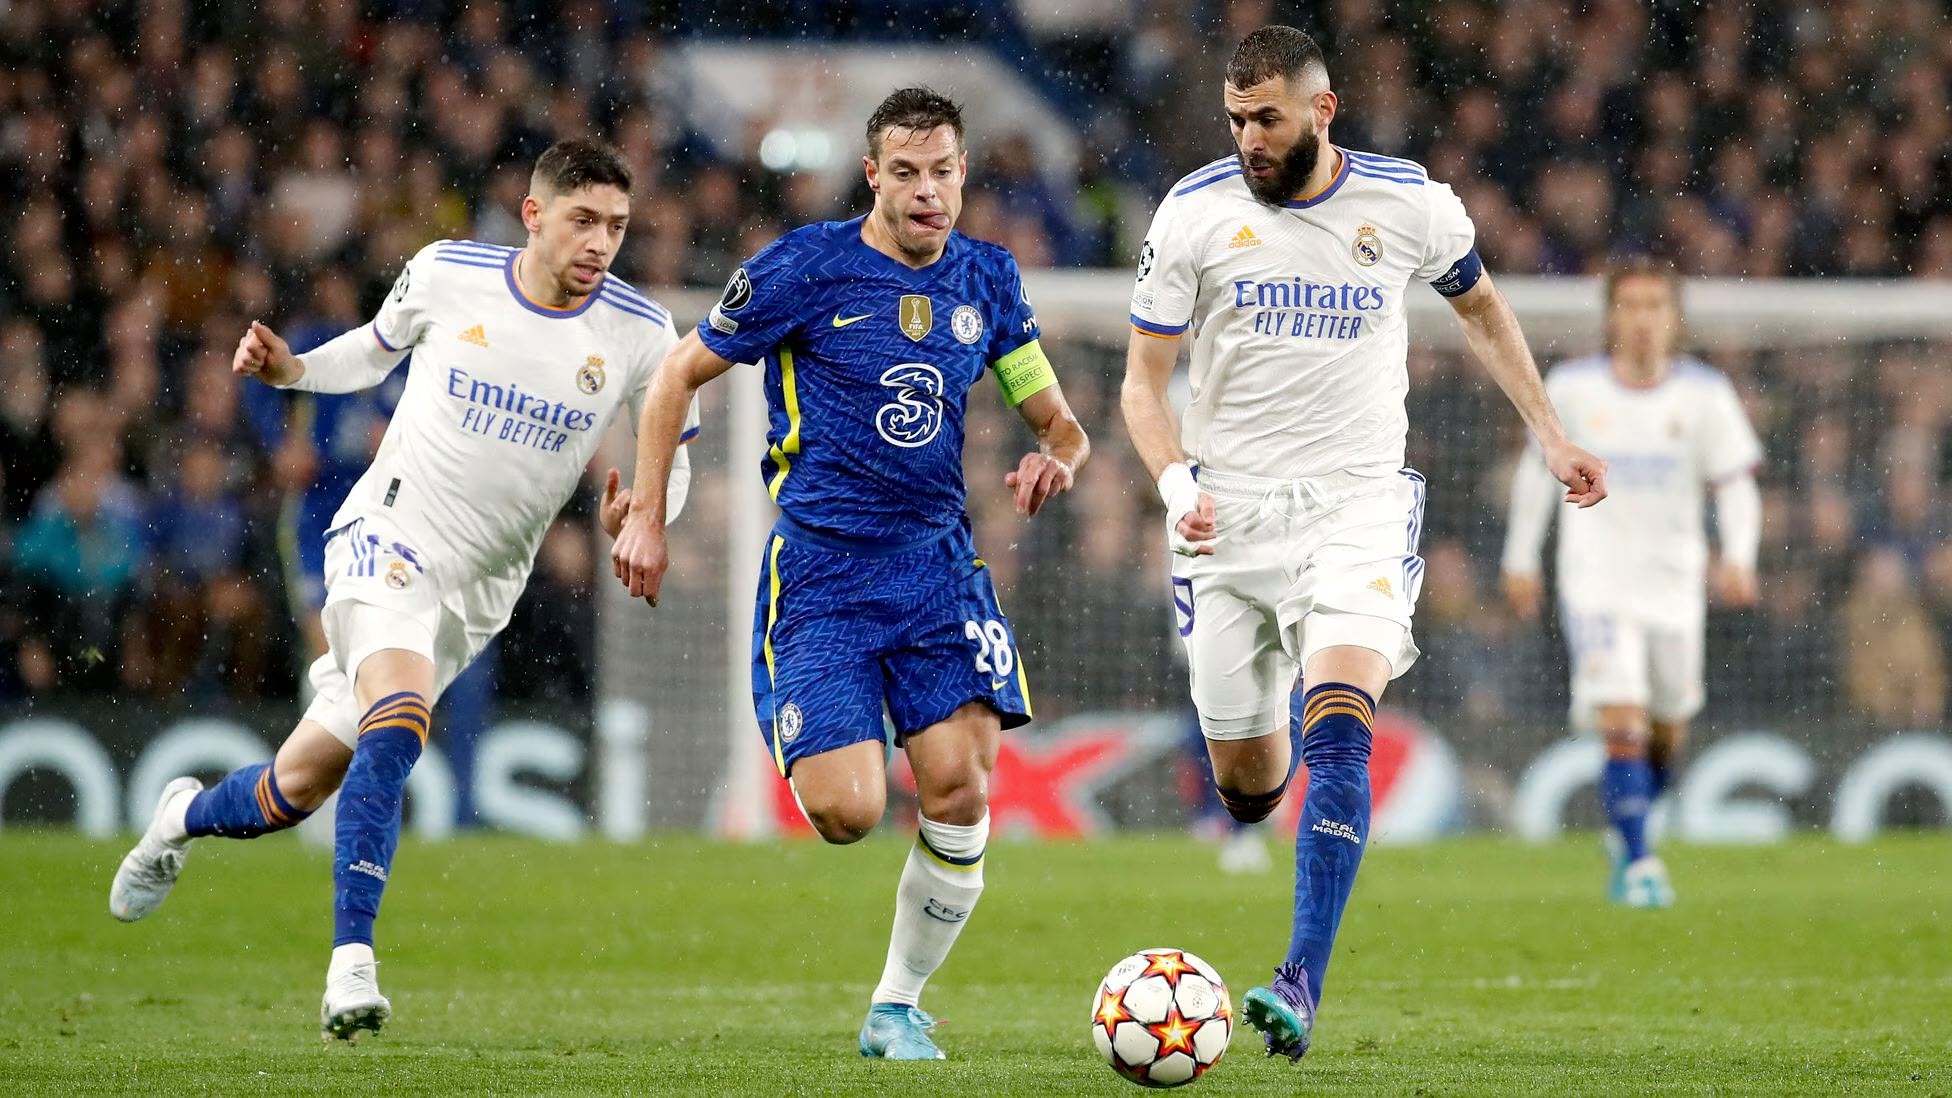 Real Madrid gặp lại Chelsea ở Champions League và lần này Chelsea đã yếu đi đáng kể